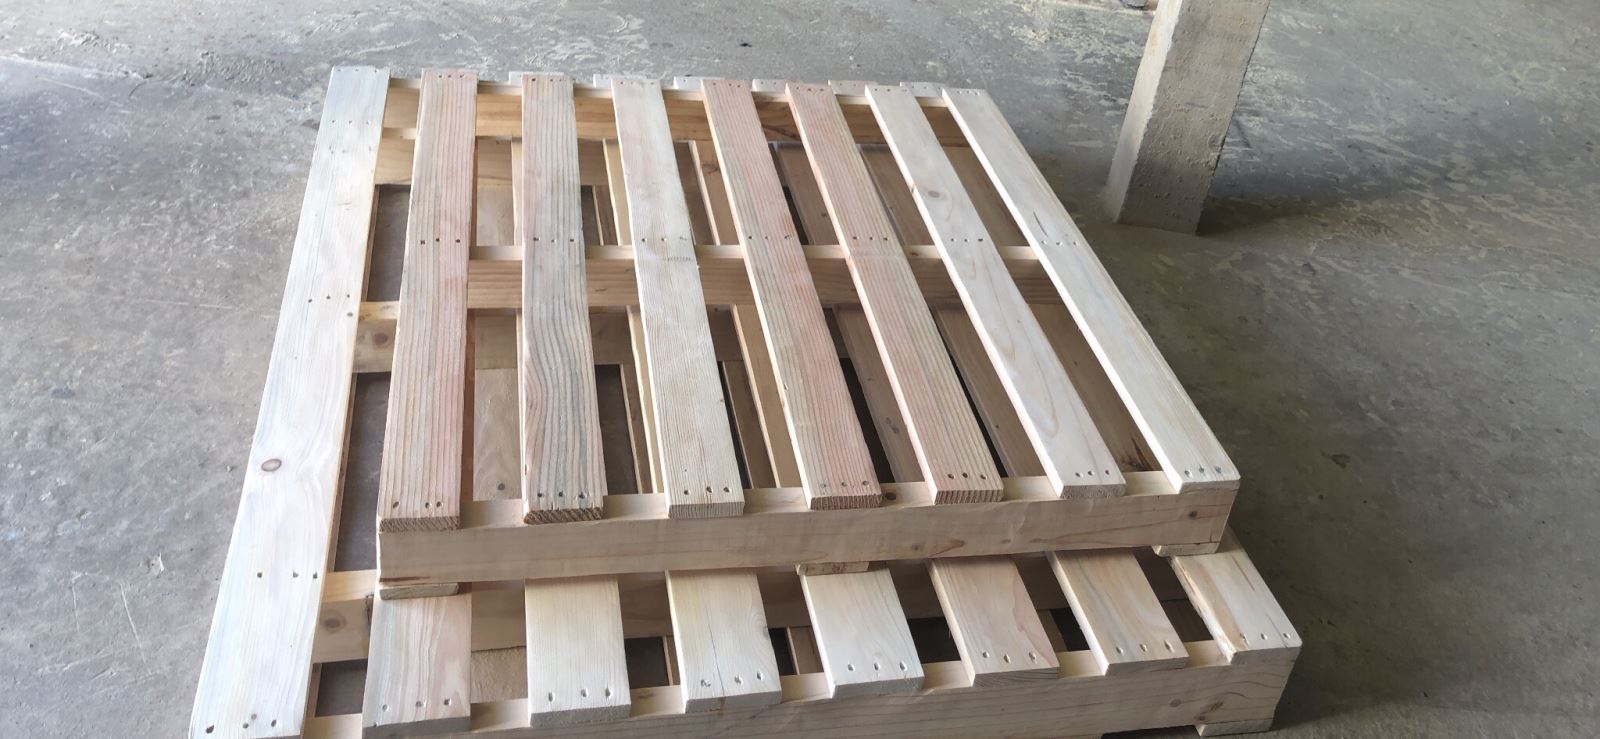 Bạn nên lựa chọn đơn vị cung cấp pallet gỗ thông Hải Phòng đạt chuẩn nhất ở đâu?